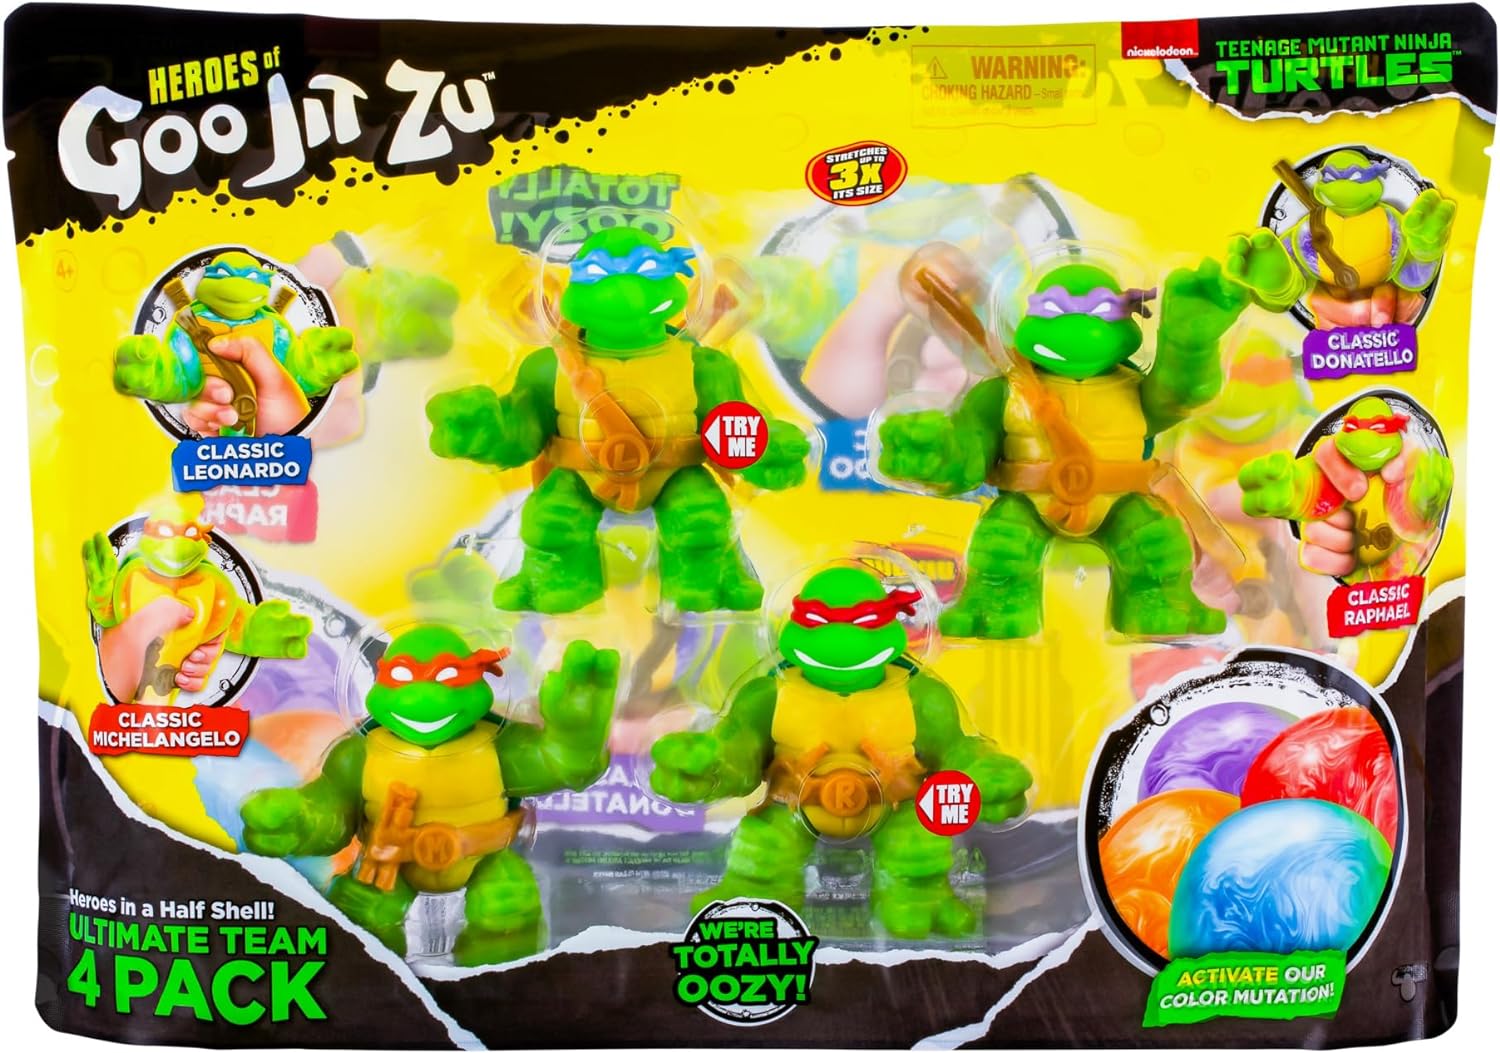 Heroes of Goo Jit Zu Teenage Mutant Ninja Turtles